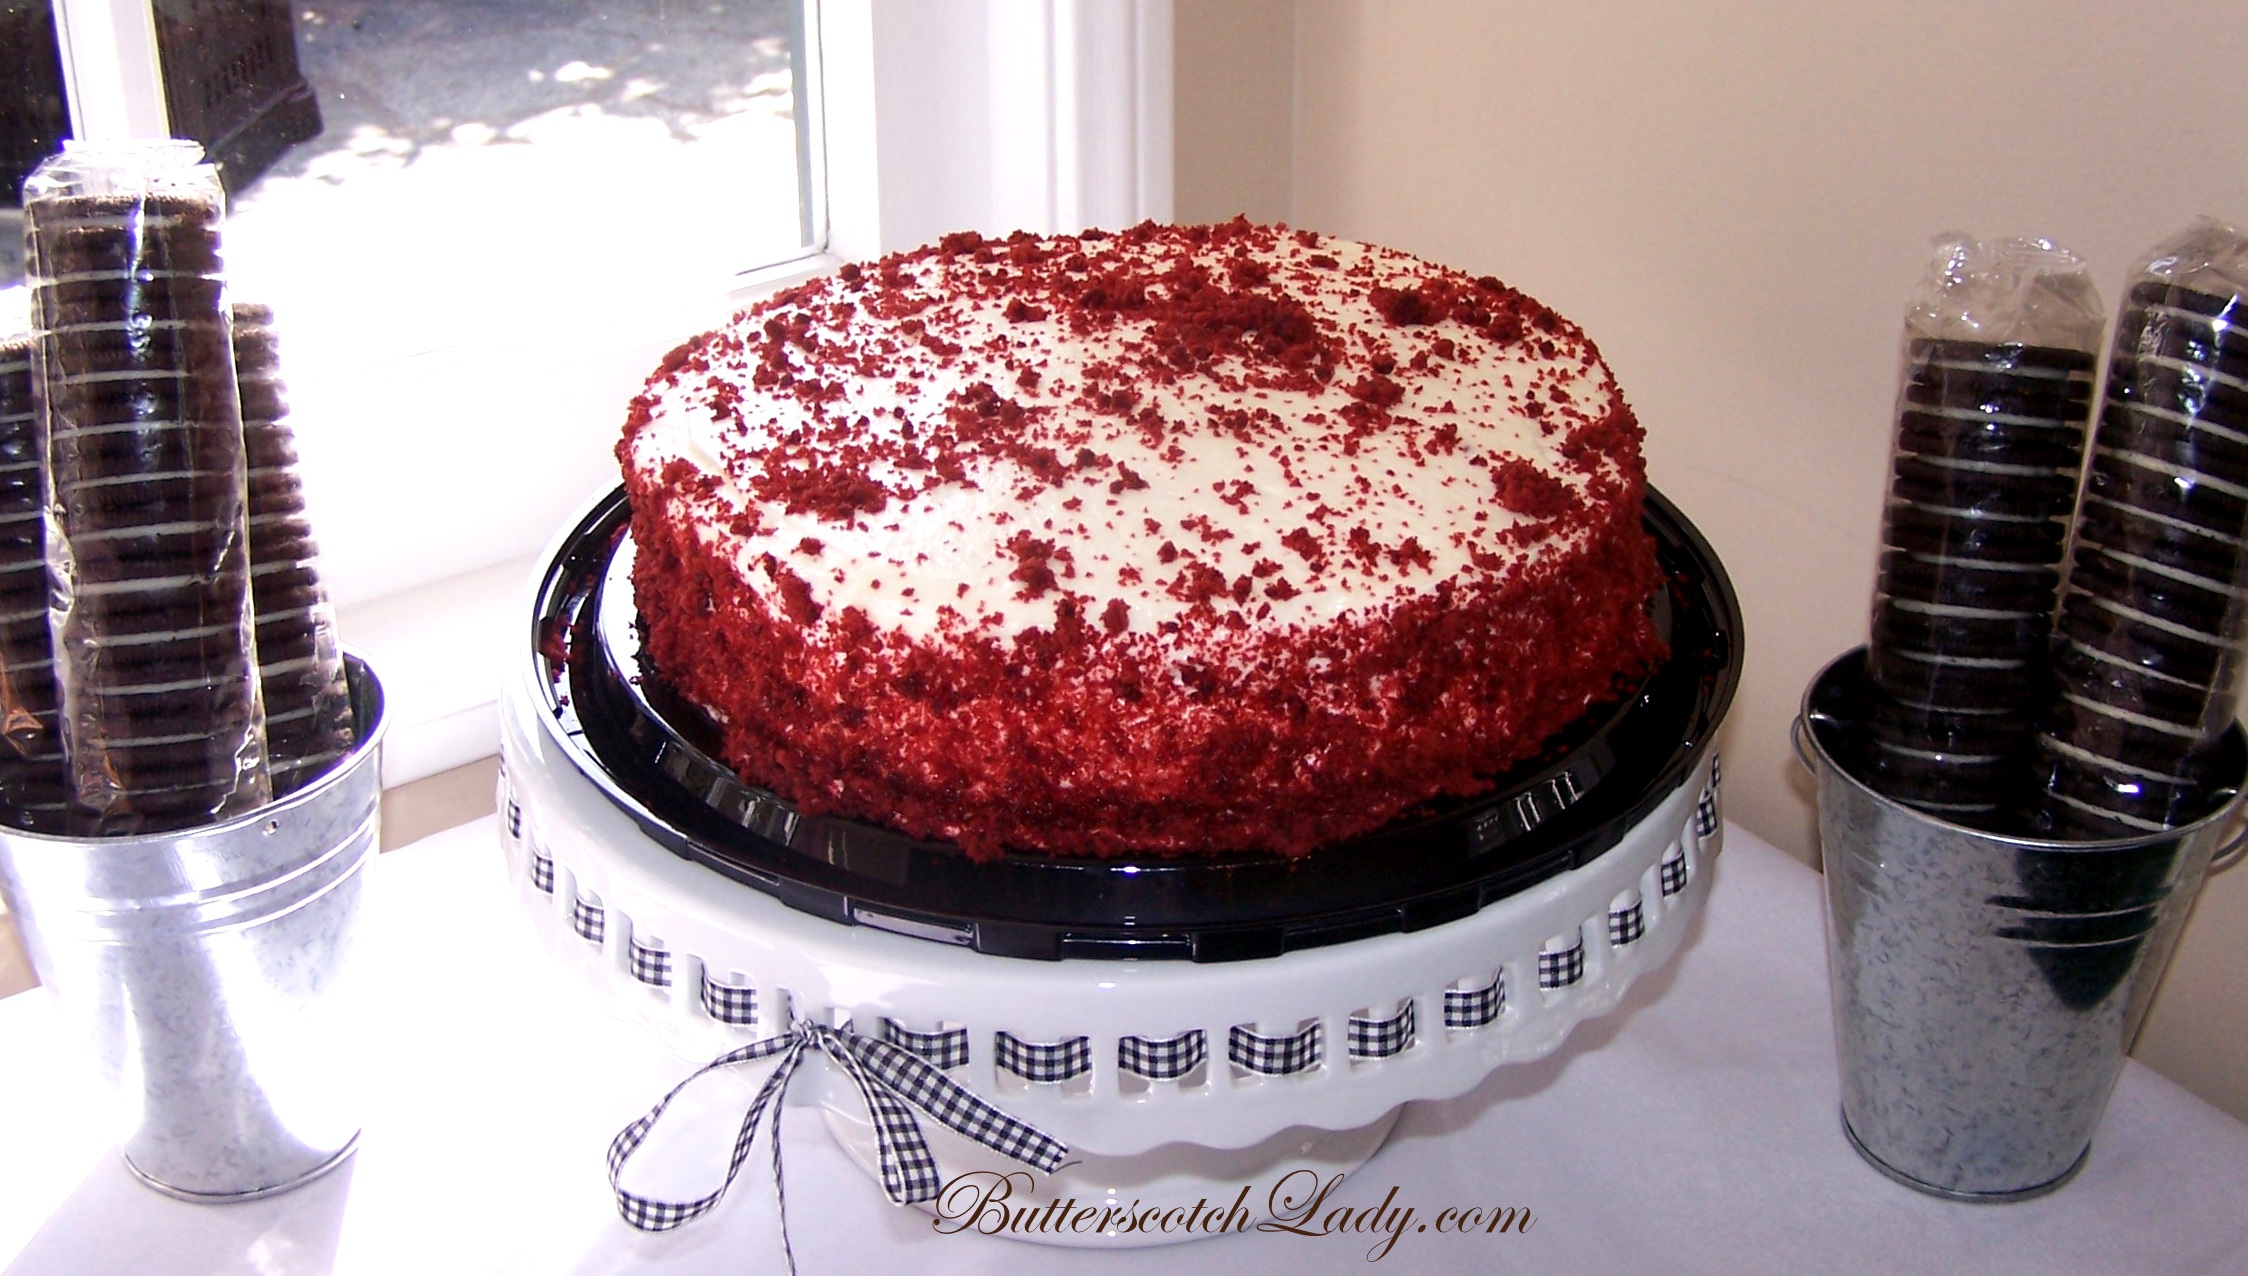 Red Velvet Cake From Costco